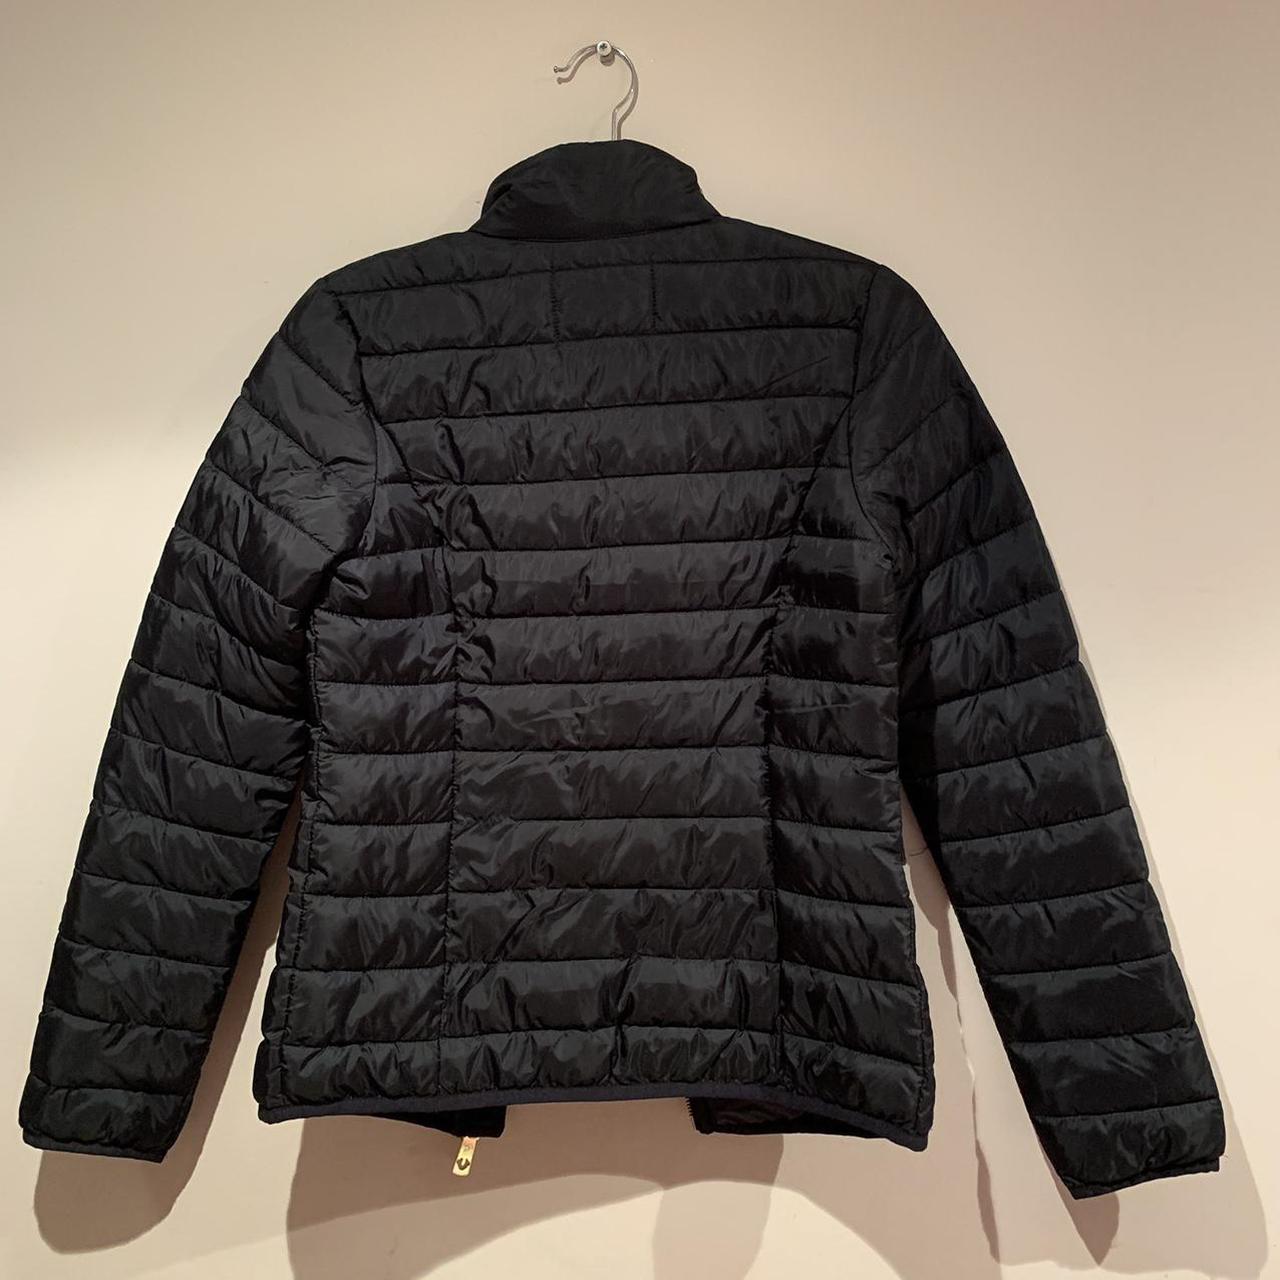 True Religion black slim puffer coat/jacket with zip... - Depop